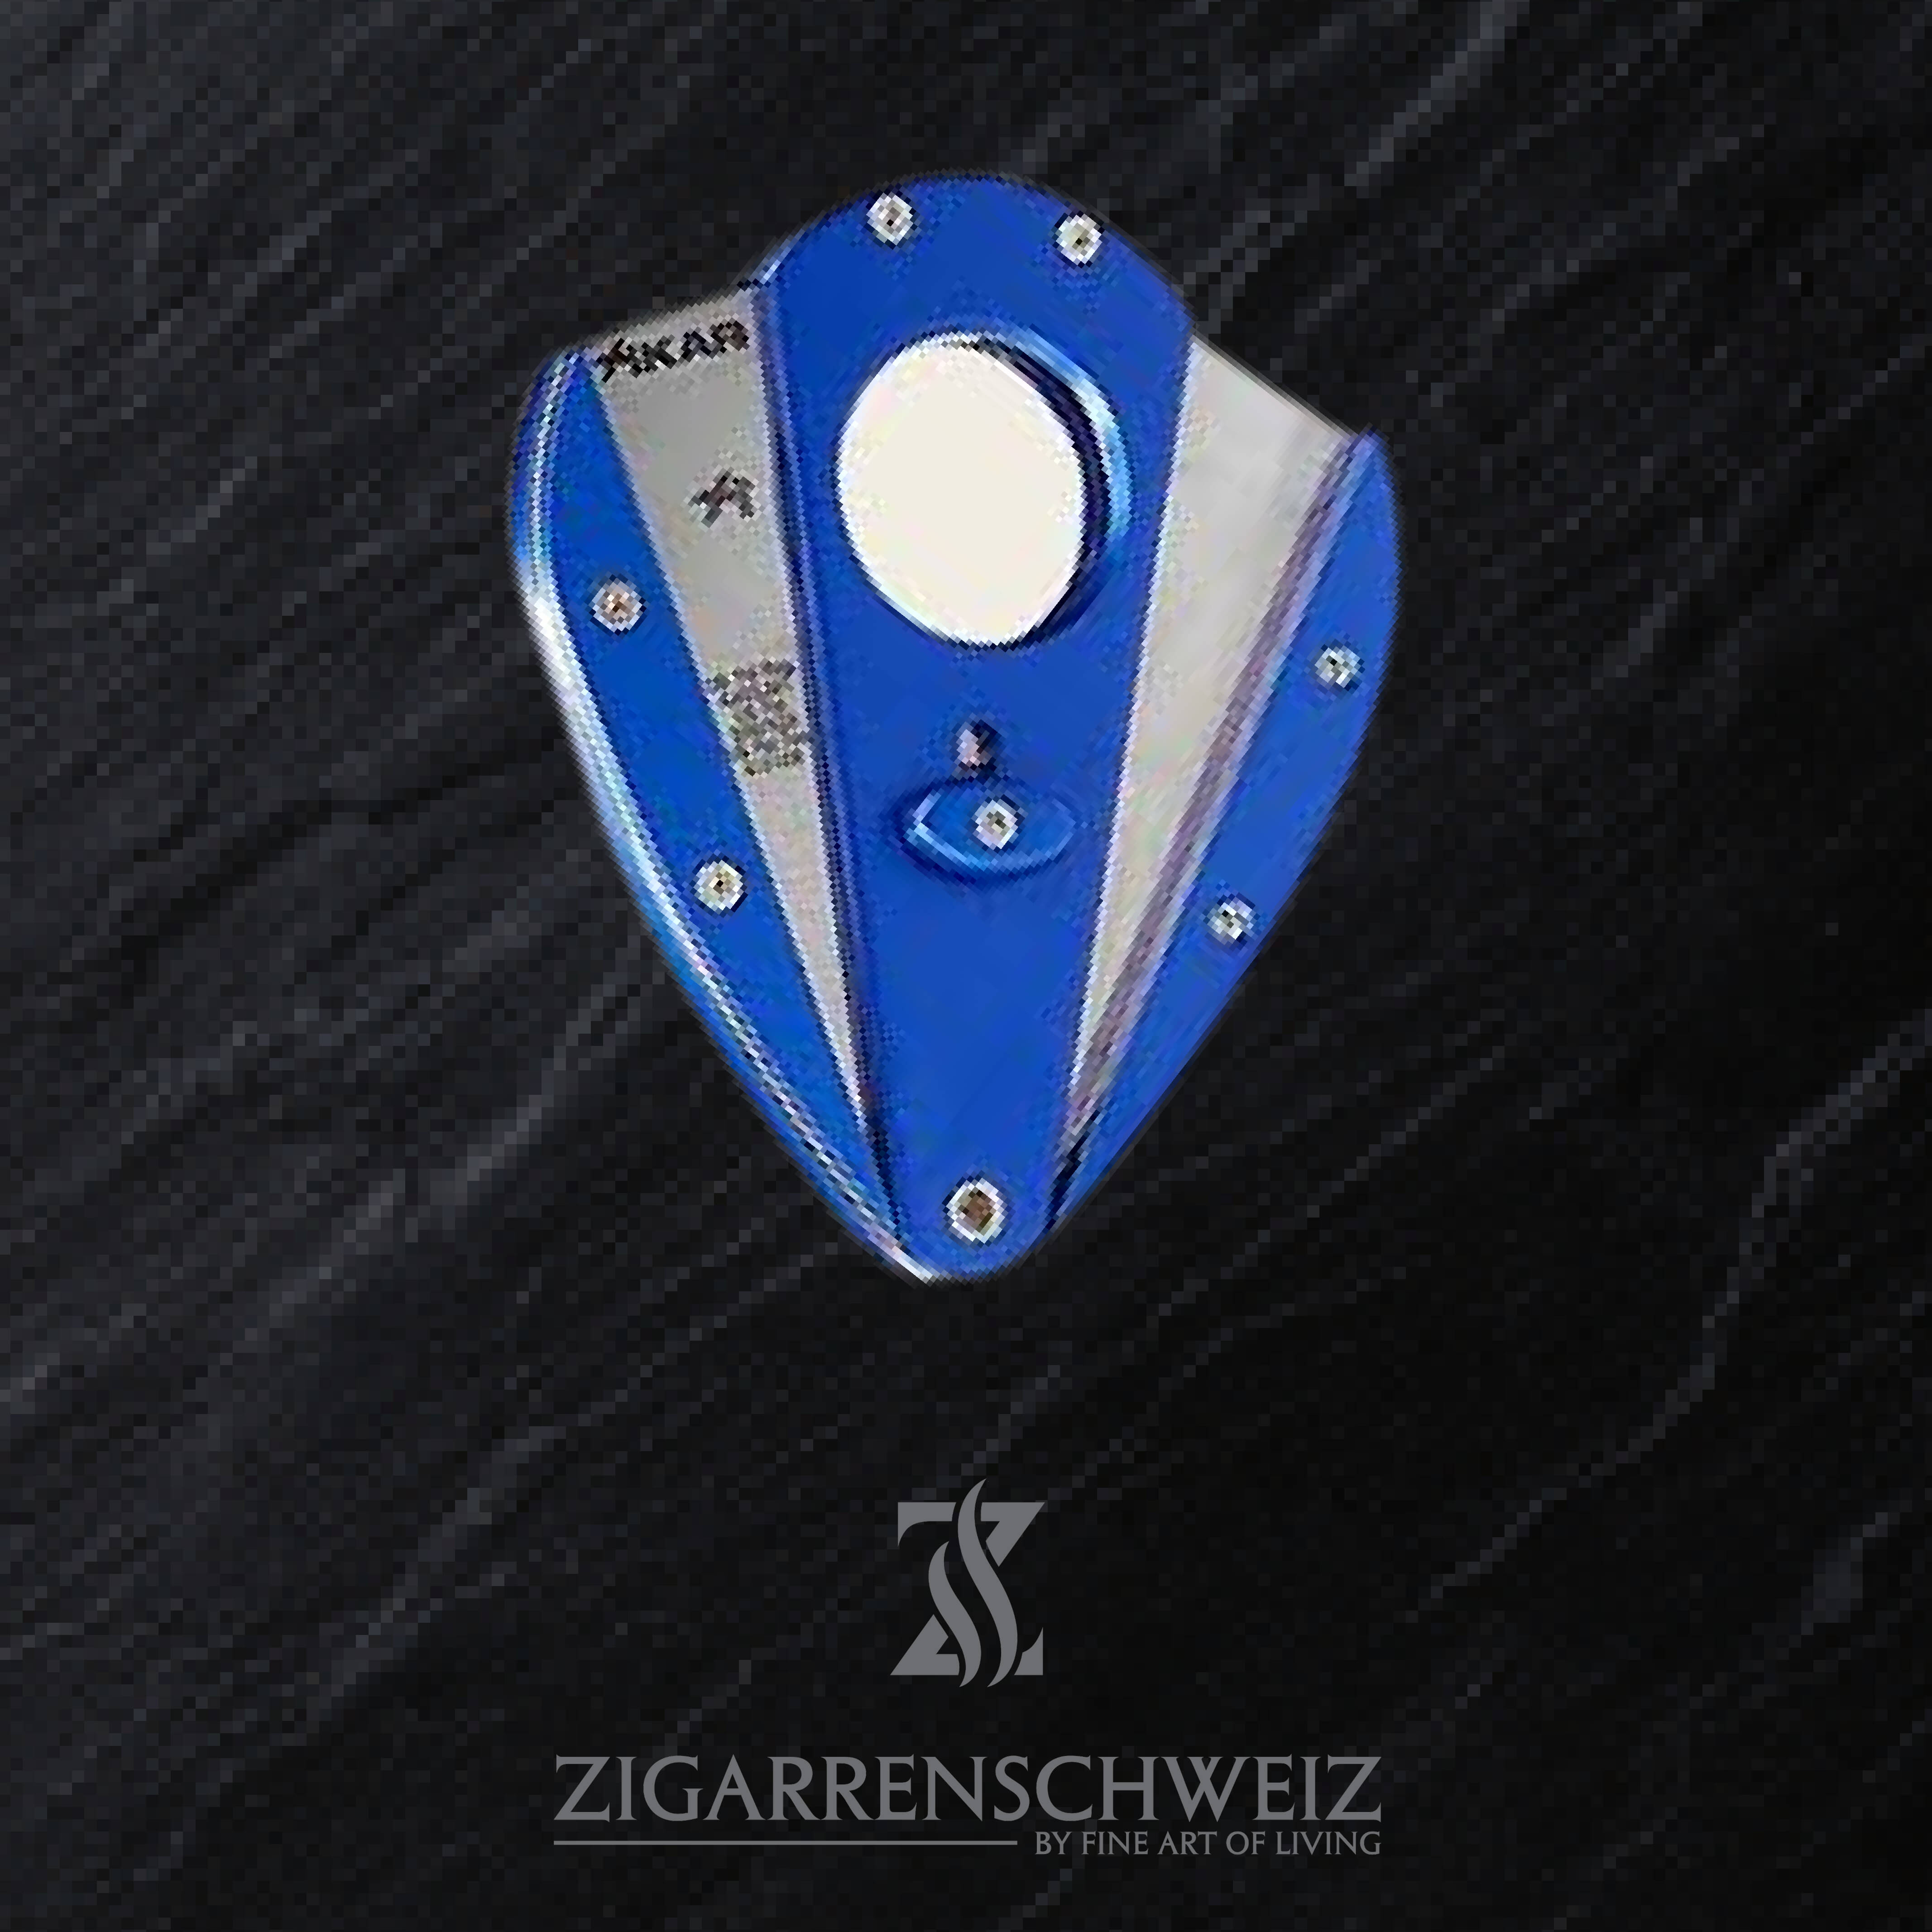 Xikar Xi1 Zigarren Cutter Farbe: Blau, Klingen Farbe: Silber, geöffnet